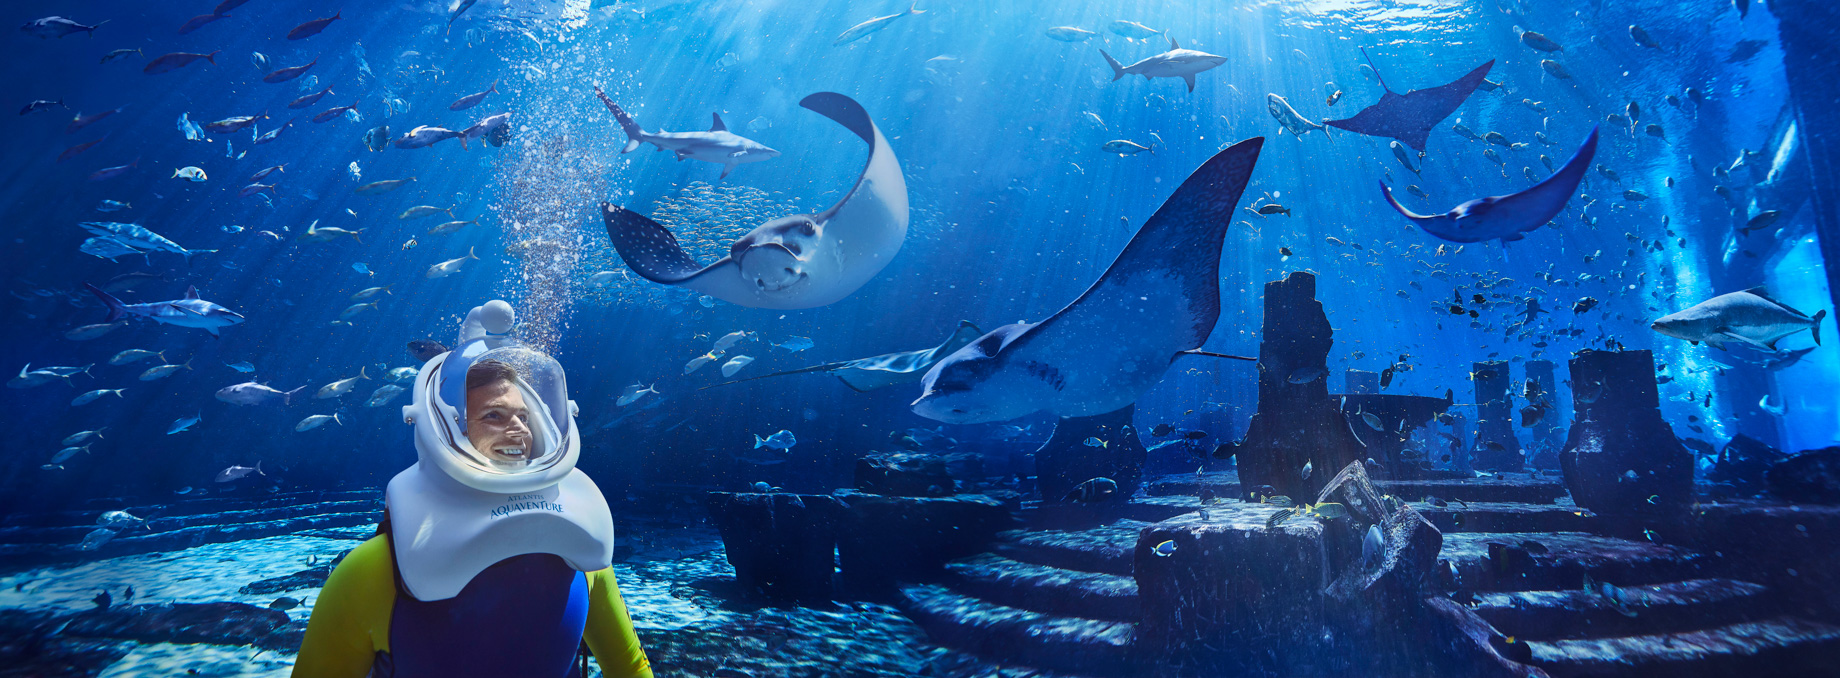 Atlantis The Palm Resort – Crescent Rd, Dubai, UAE – Underwater Aquatrek Xtreme